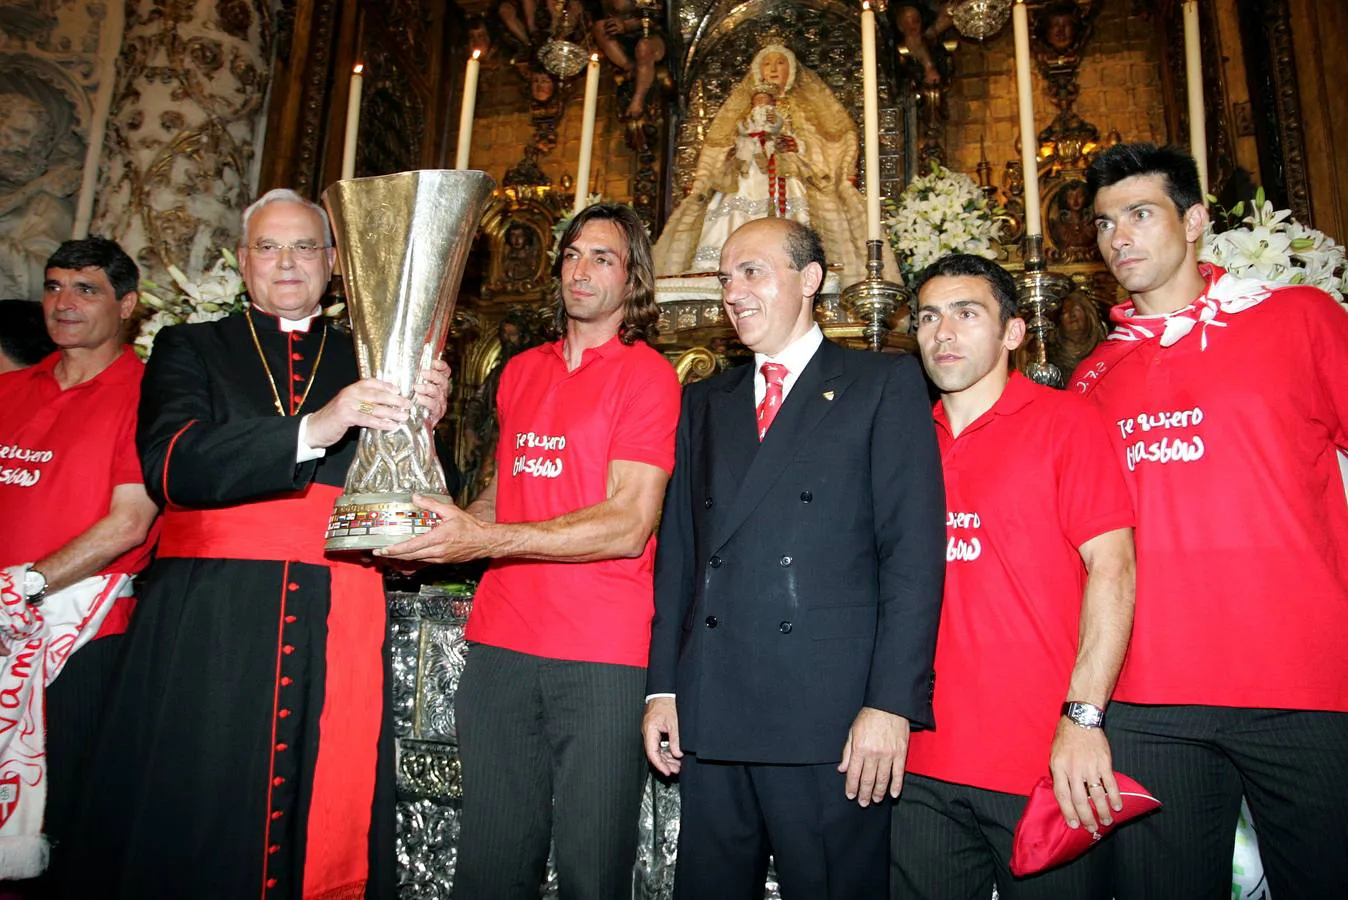 Presentación de la Copa de la UEFA ganada por el Sevilla FC a la Virgen de los Reyes. FELIPE GUZMÁN